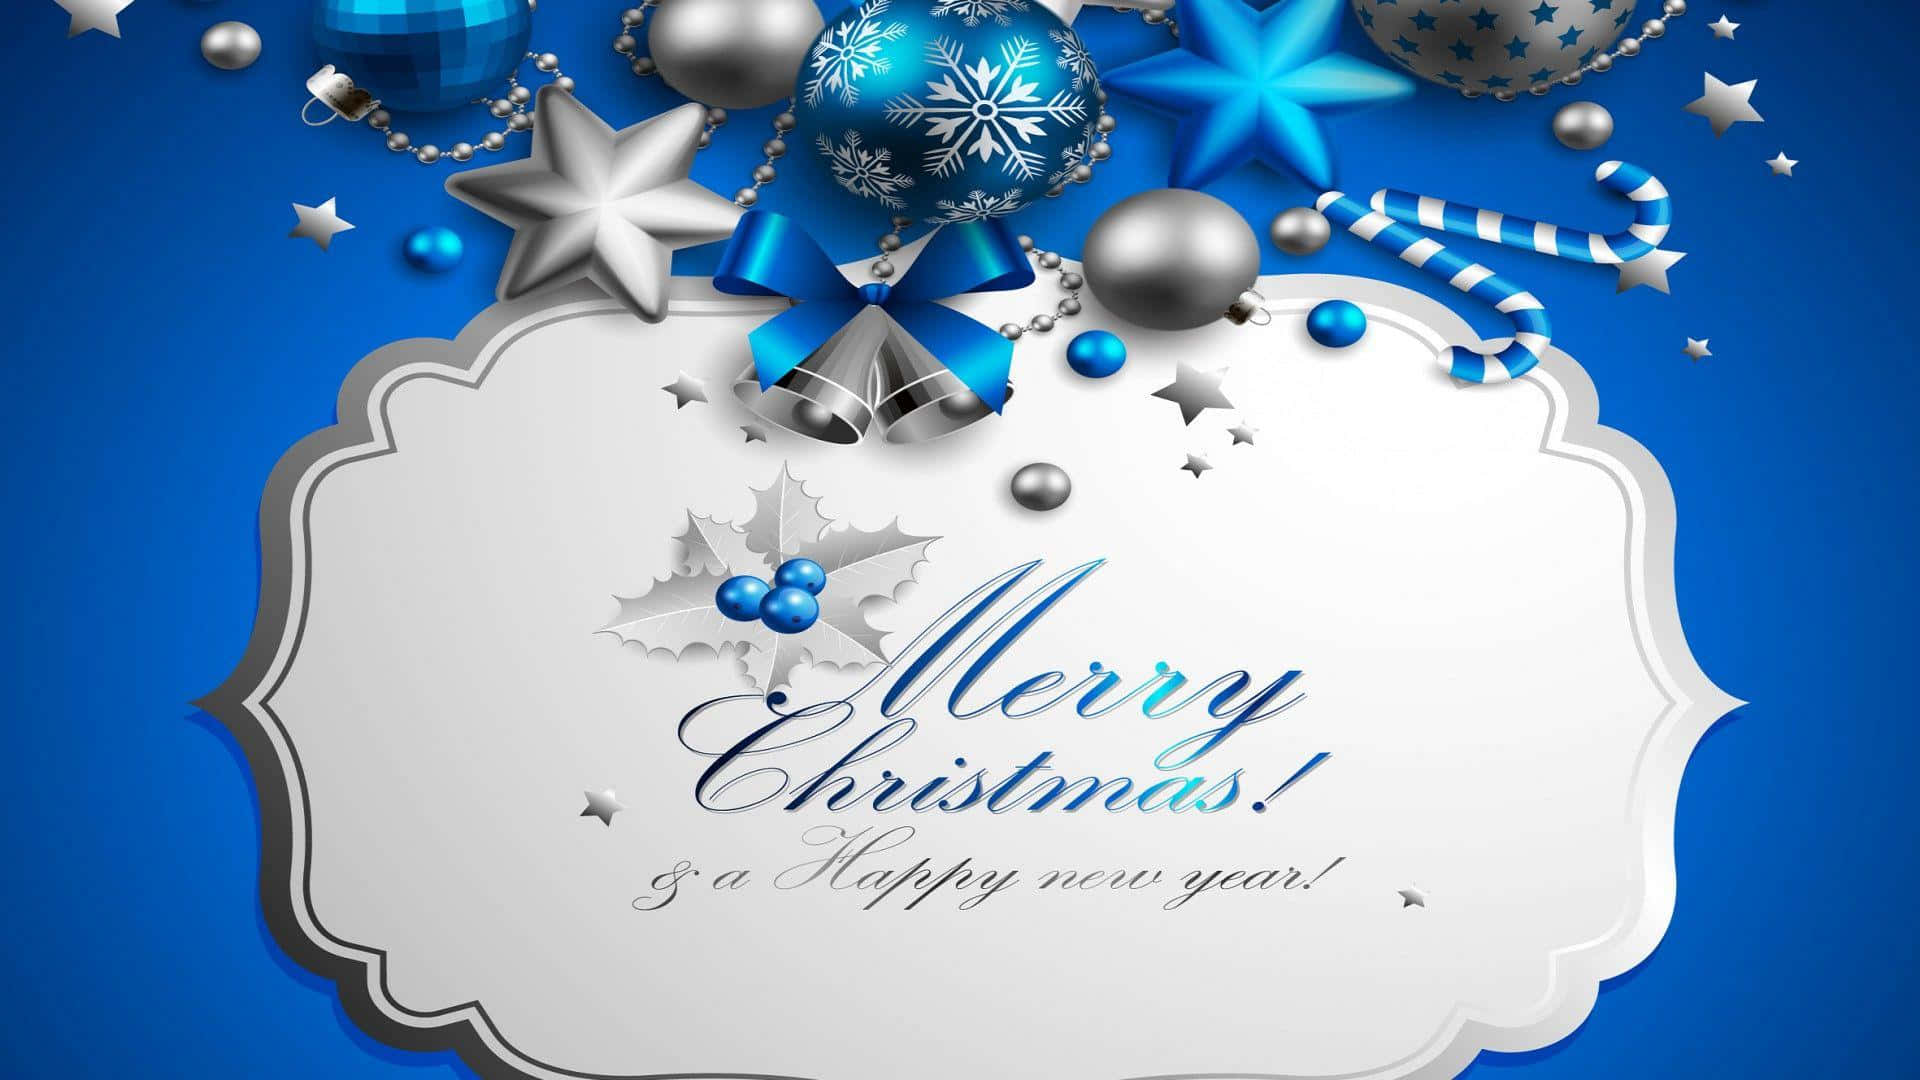 Saludaa Tus Seres Queridos Con Alegría Y Deseándoles Una Feliz Navidad Con Esta Tarjeta Electrónica Especial.